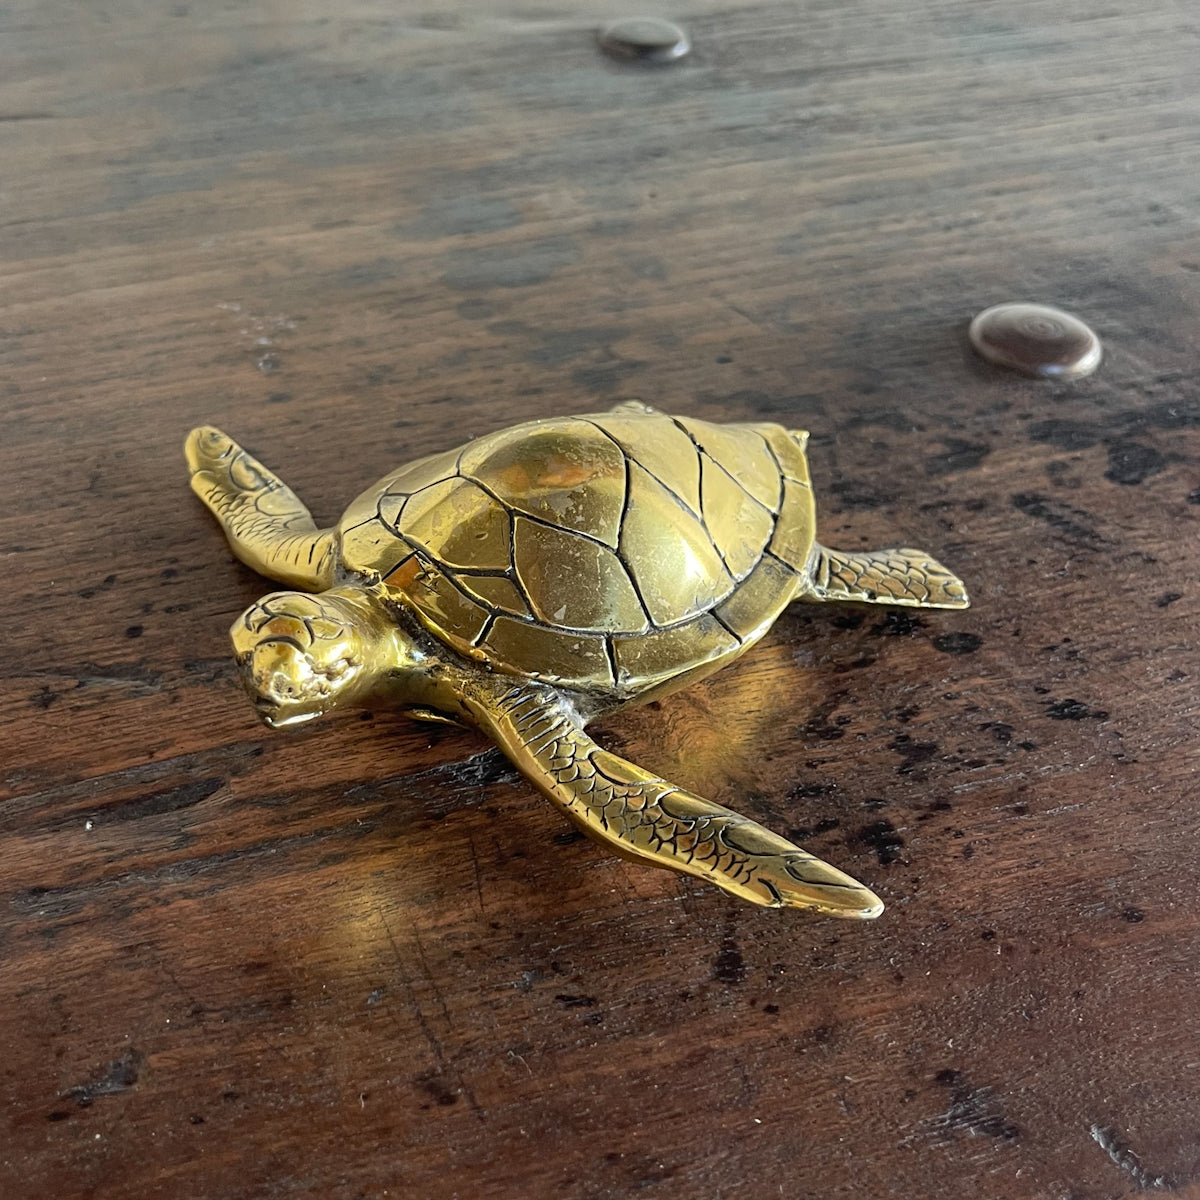 Turtle Figurine